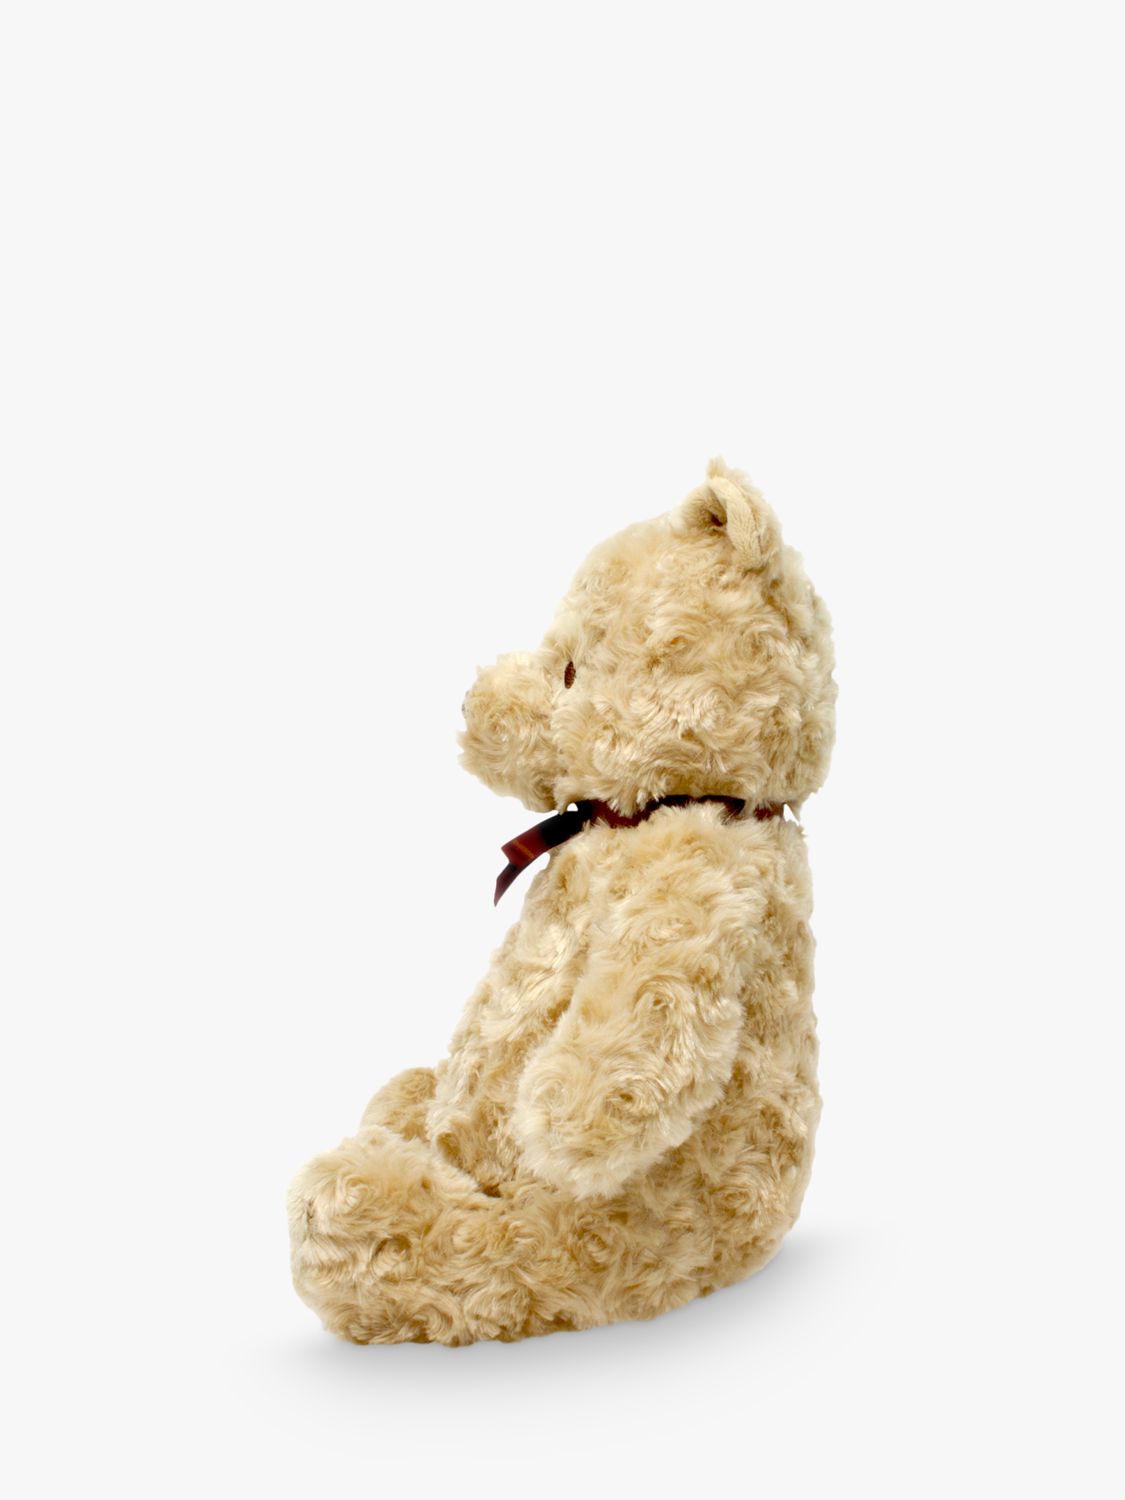 pooh bear cuddly toy